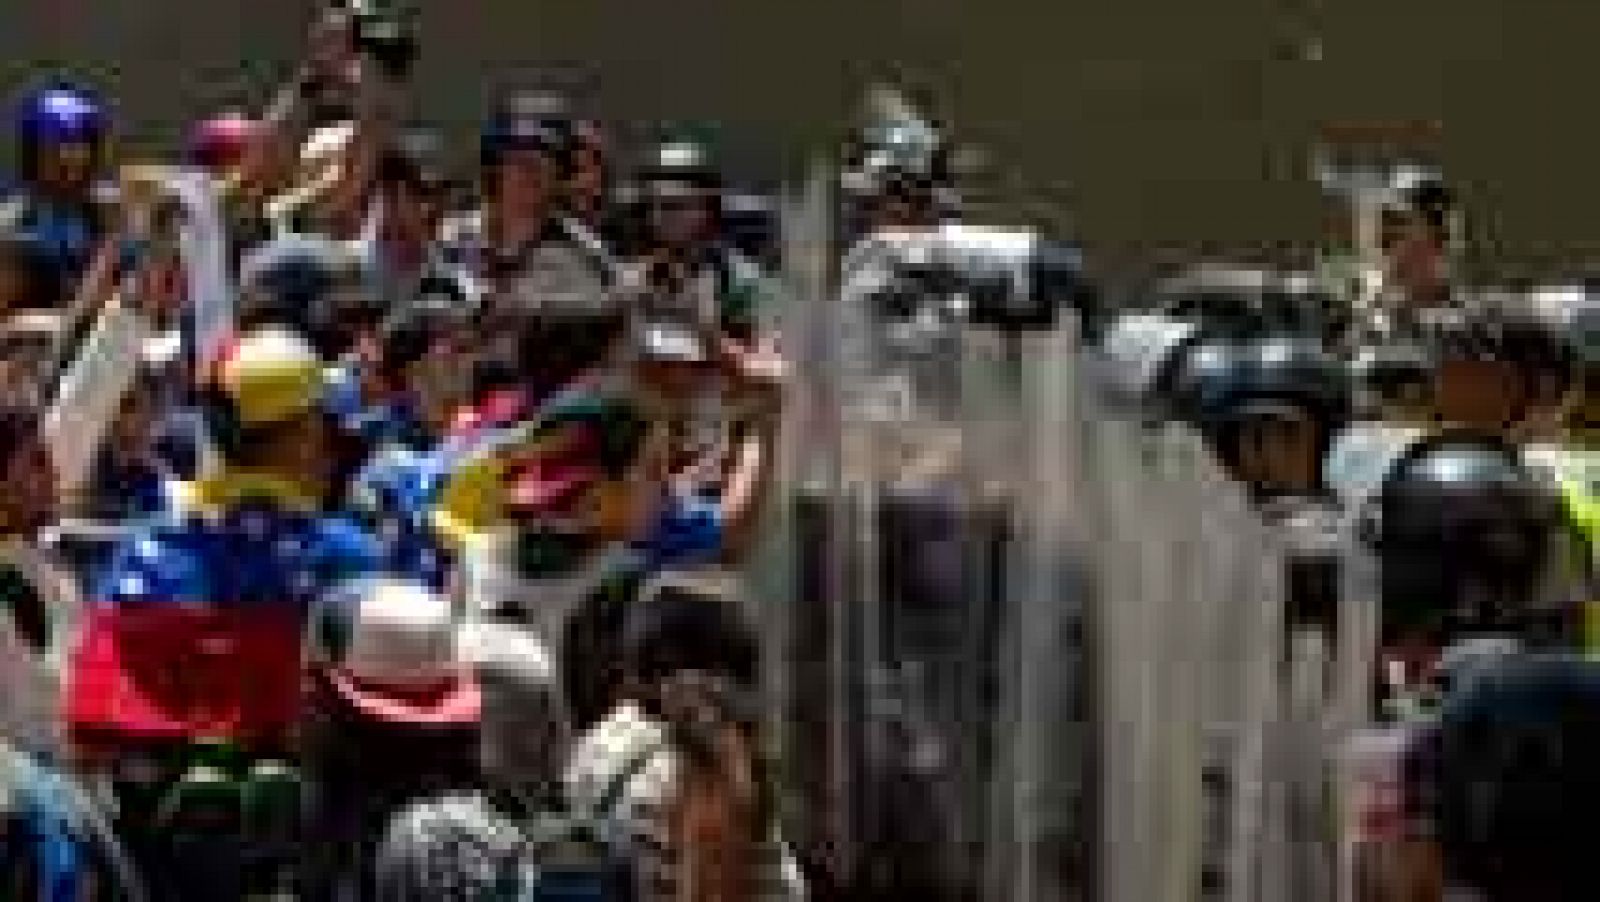 La detención de Ledezma vuelve a dividir a los venezolanos